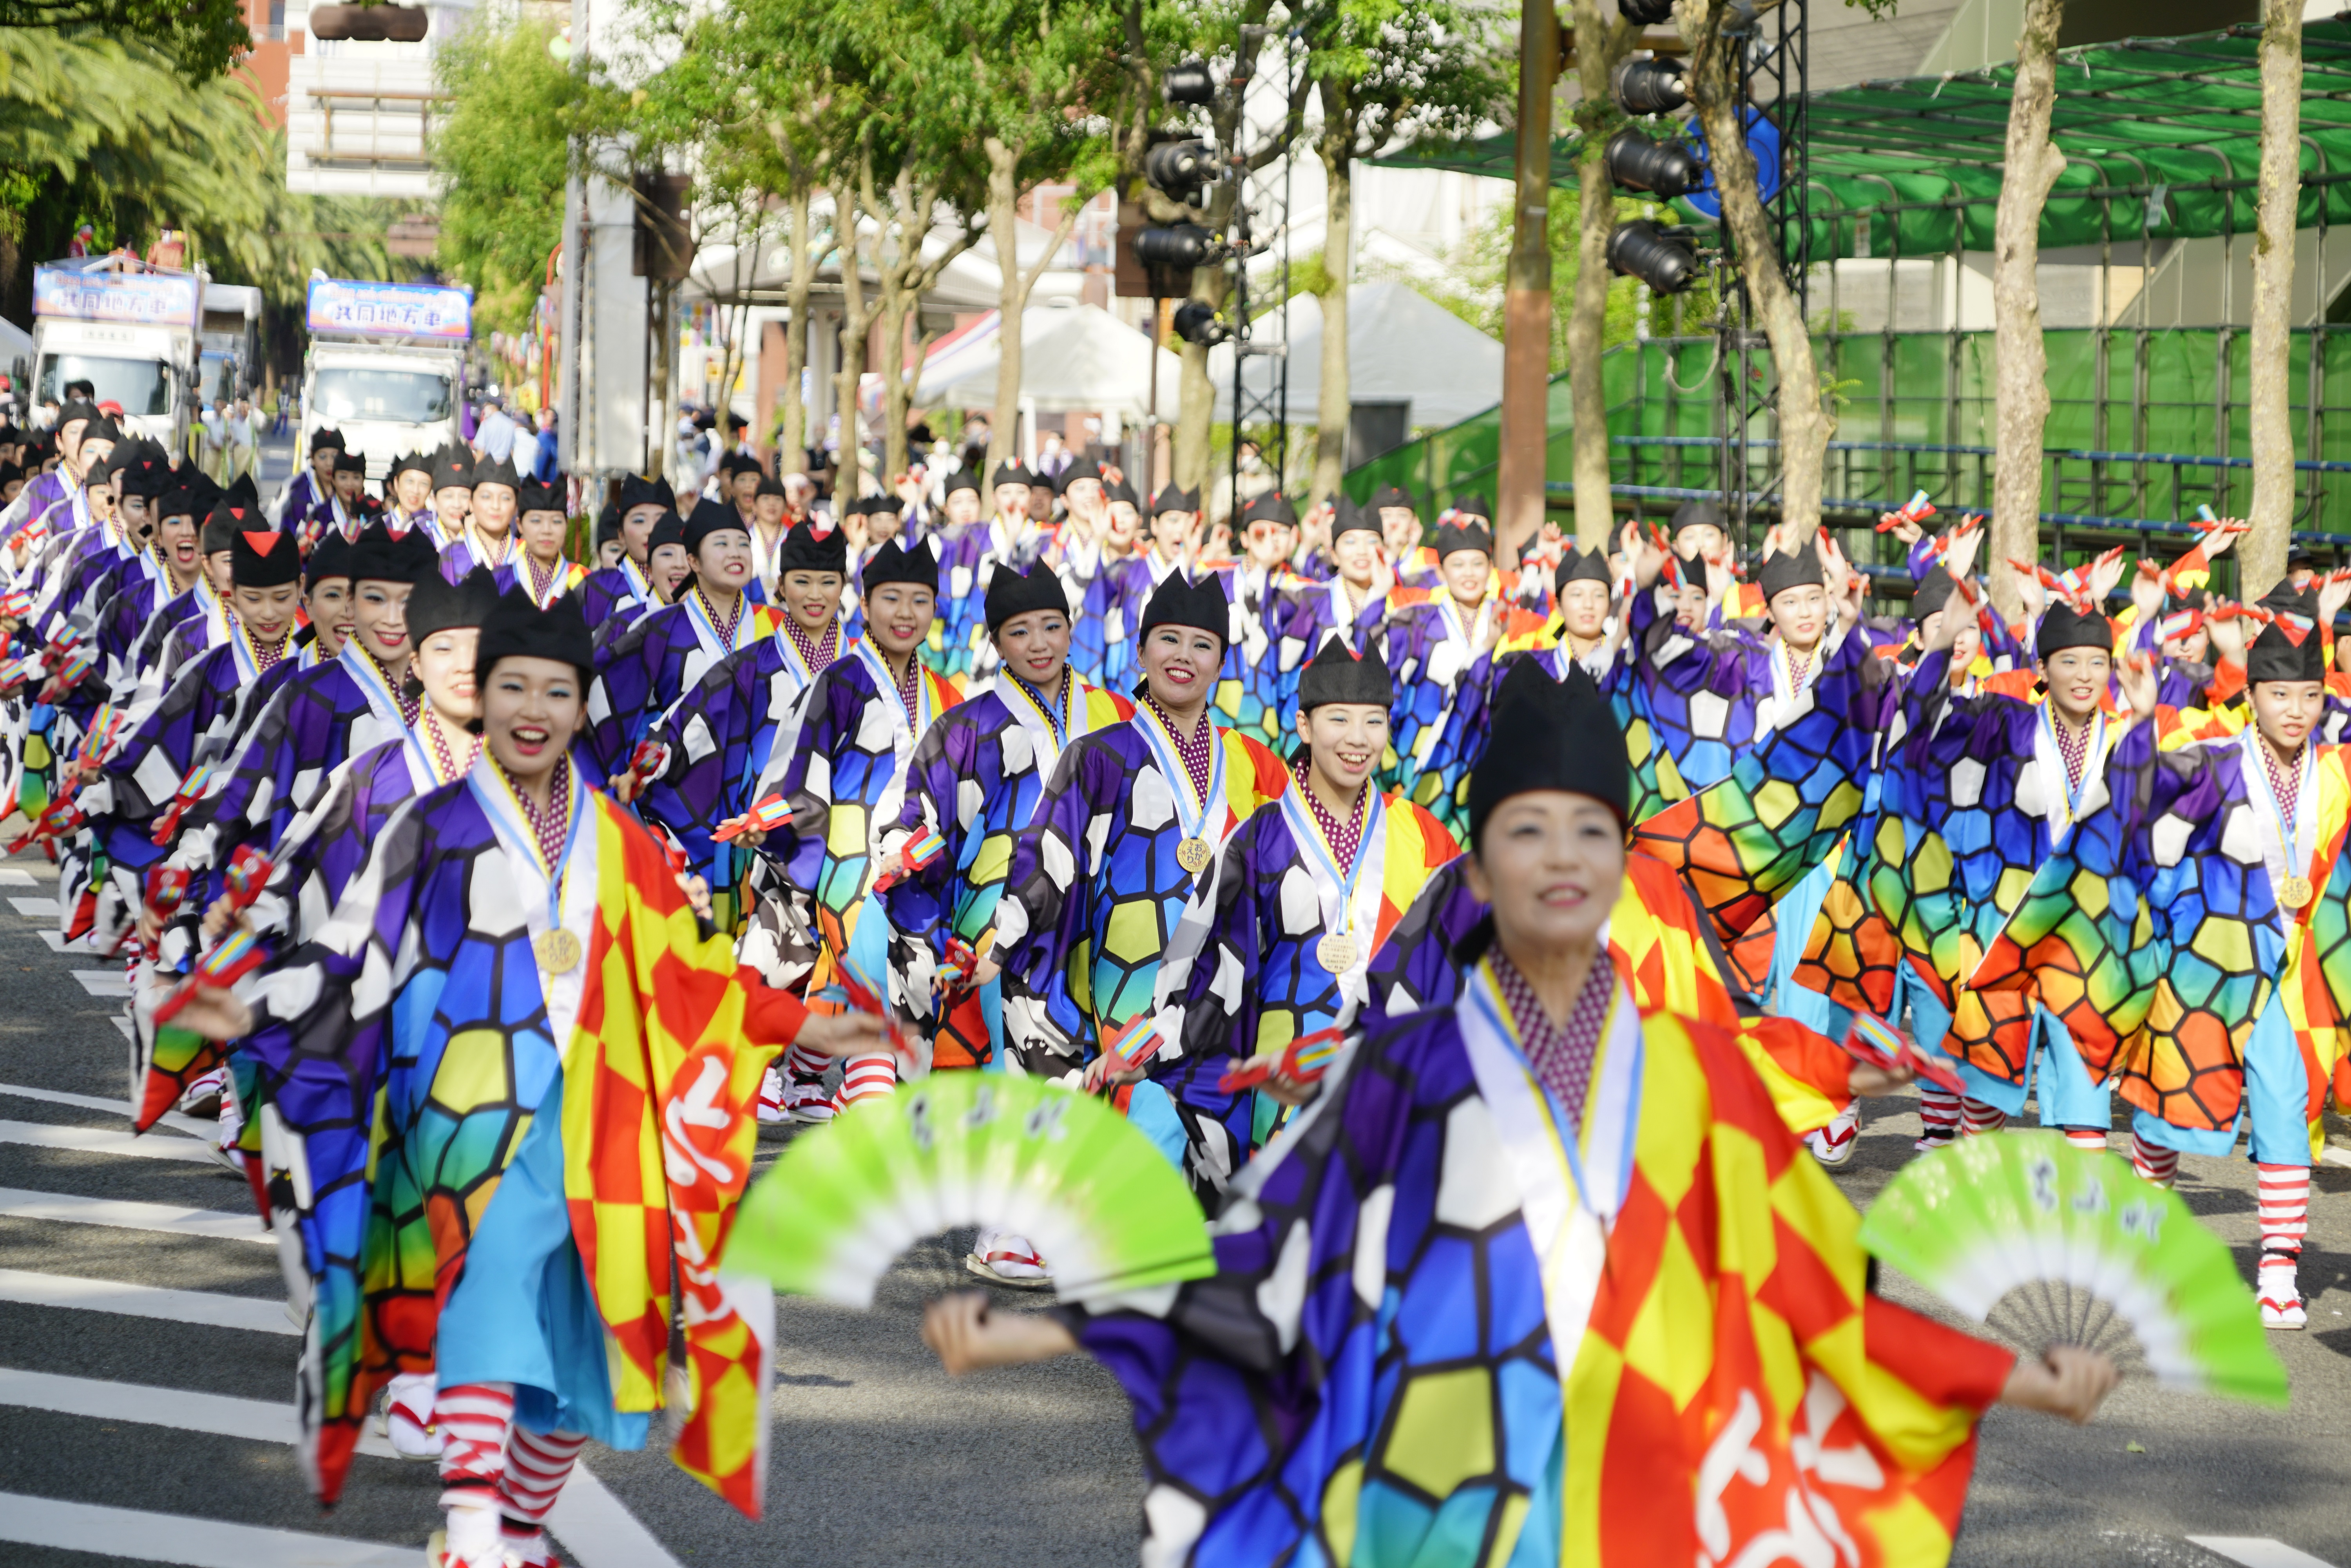 MSCベリッシマ ねぶたに沸く 東北夏祭りとよさこい祭り釜山クルーズ5日間-横浜発釜山着-